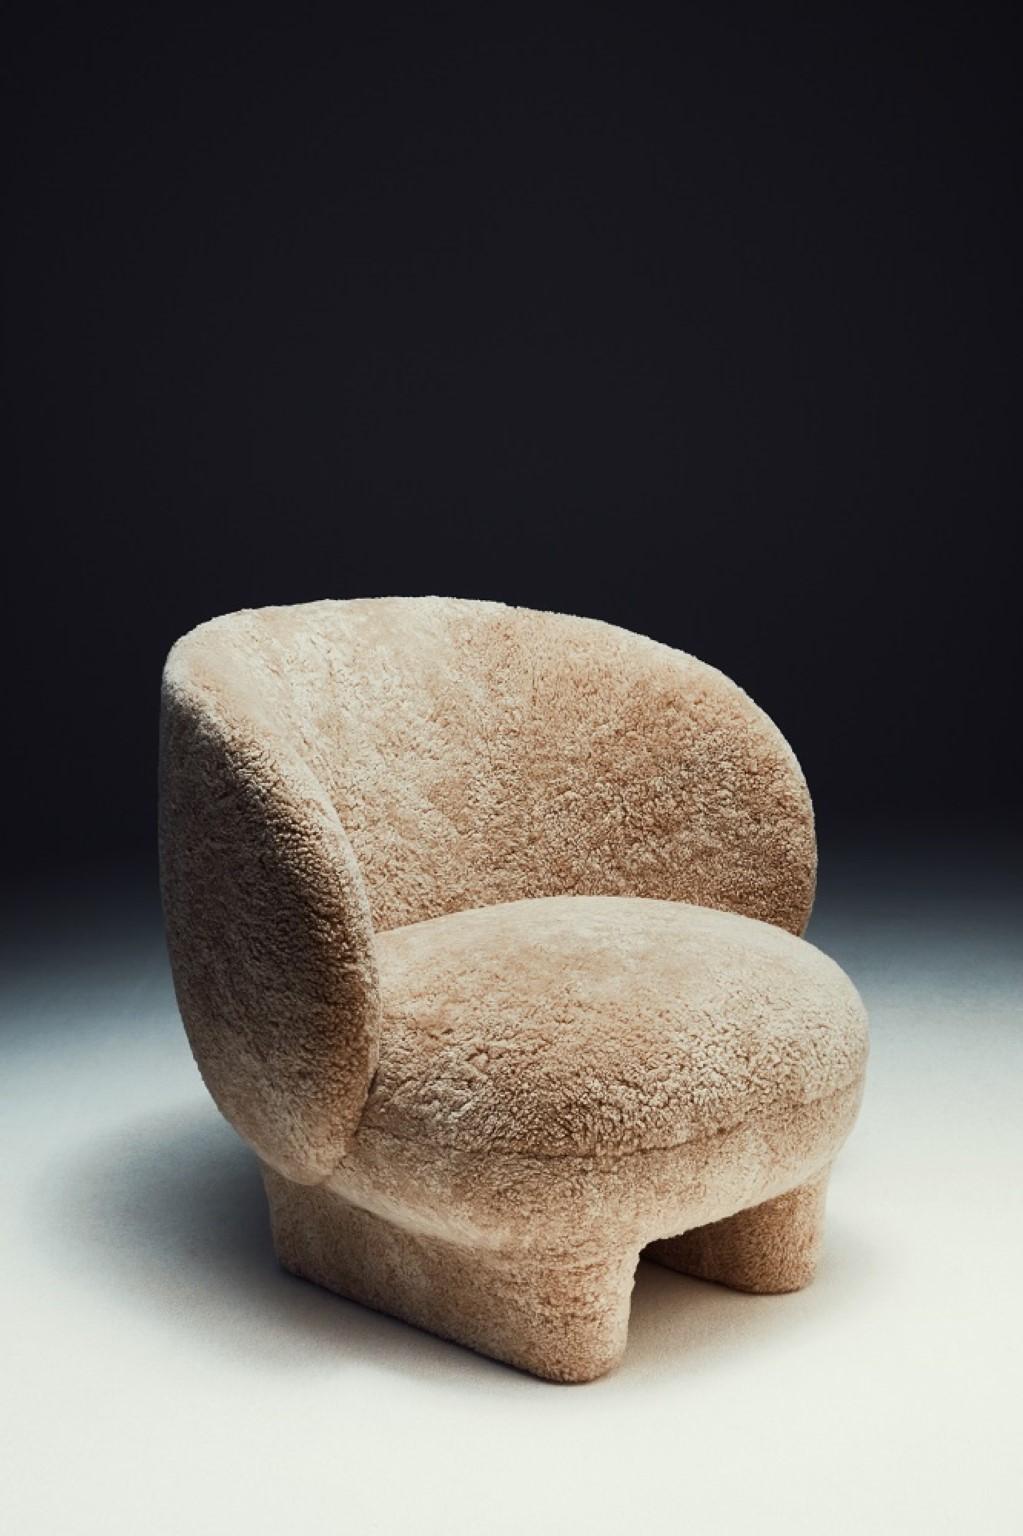 Fauteuil Moro de Sebastian Herkner
Dimensions : D 80 x L 79,7 x H 78,5 cm 
Matériaux : Peau de mouton
Disponible en différents tissus.

Moro